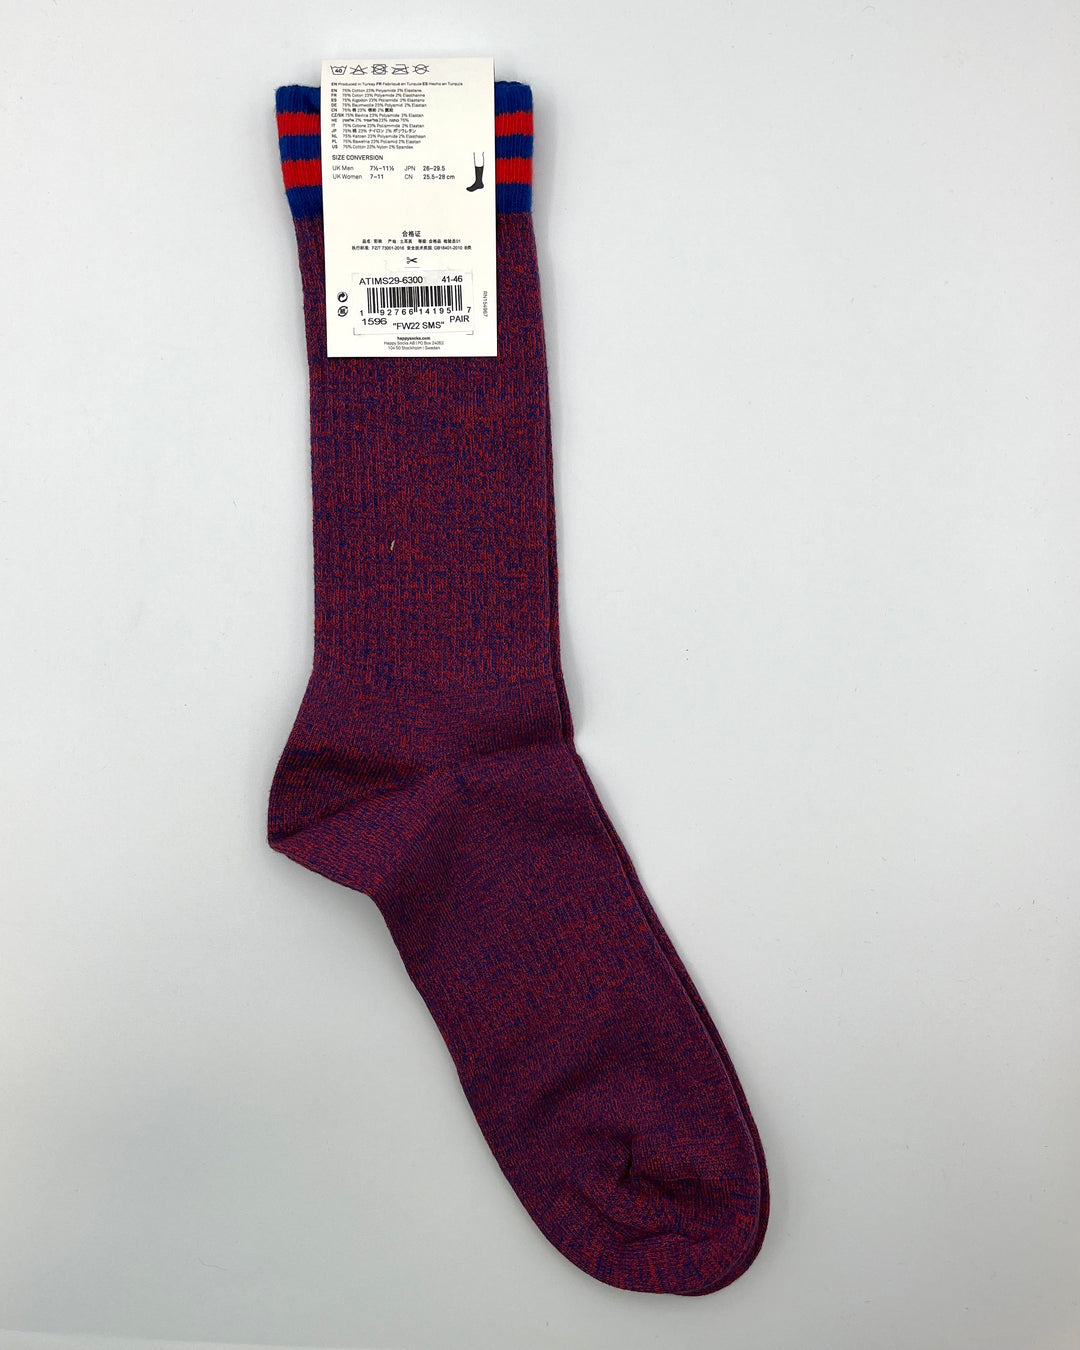 Maroon Socks - Unisex Adult Sizes